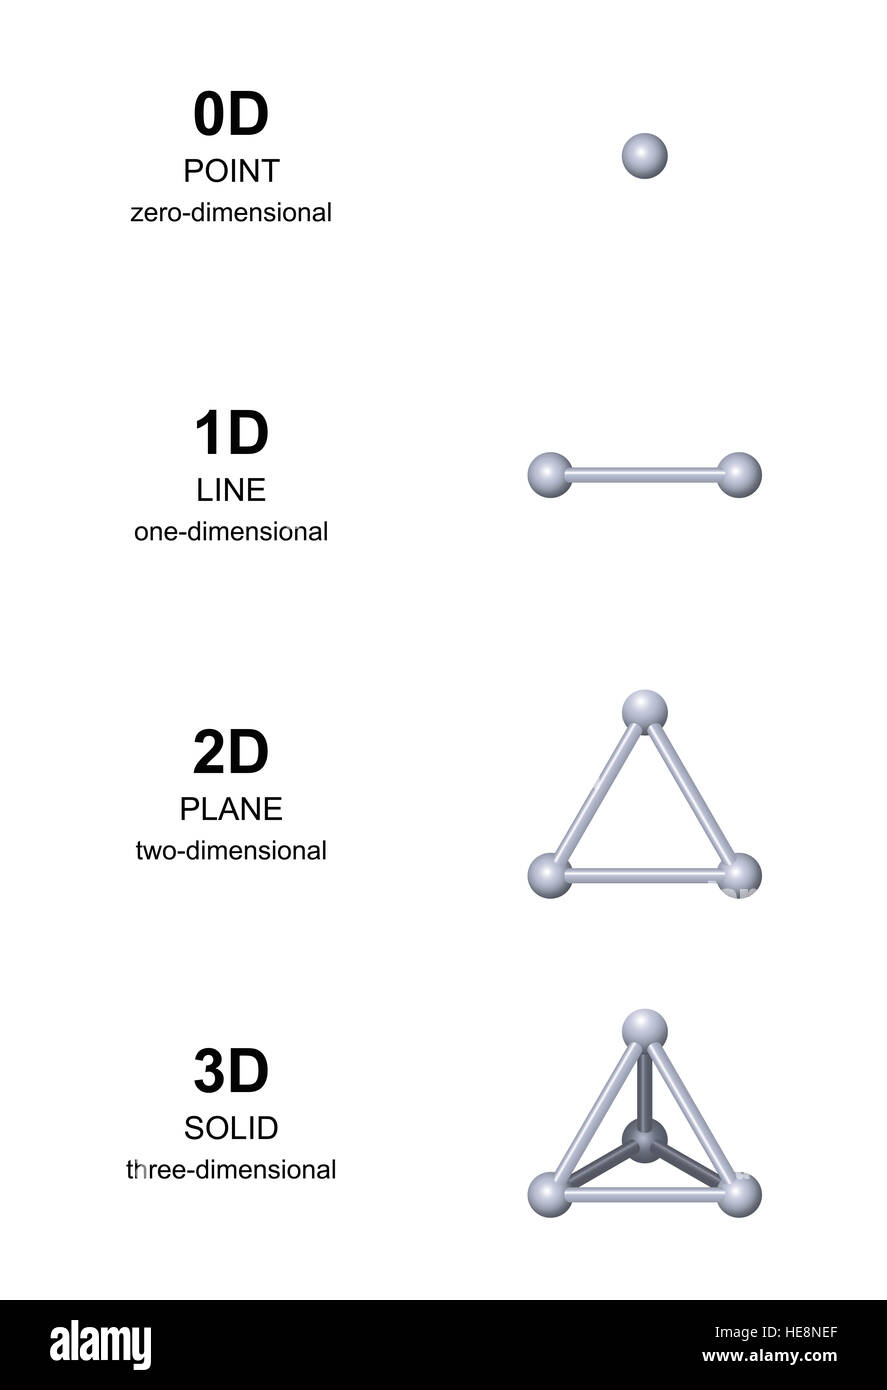 Desarrollo 3D con esferas grises. A partir de la cota cero a las tres dimensiones. Punto, Línea, Plano y sólido, o triángulo equilátero Foto de stock